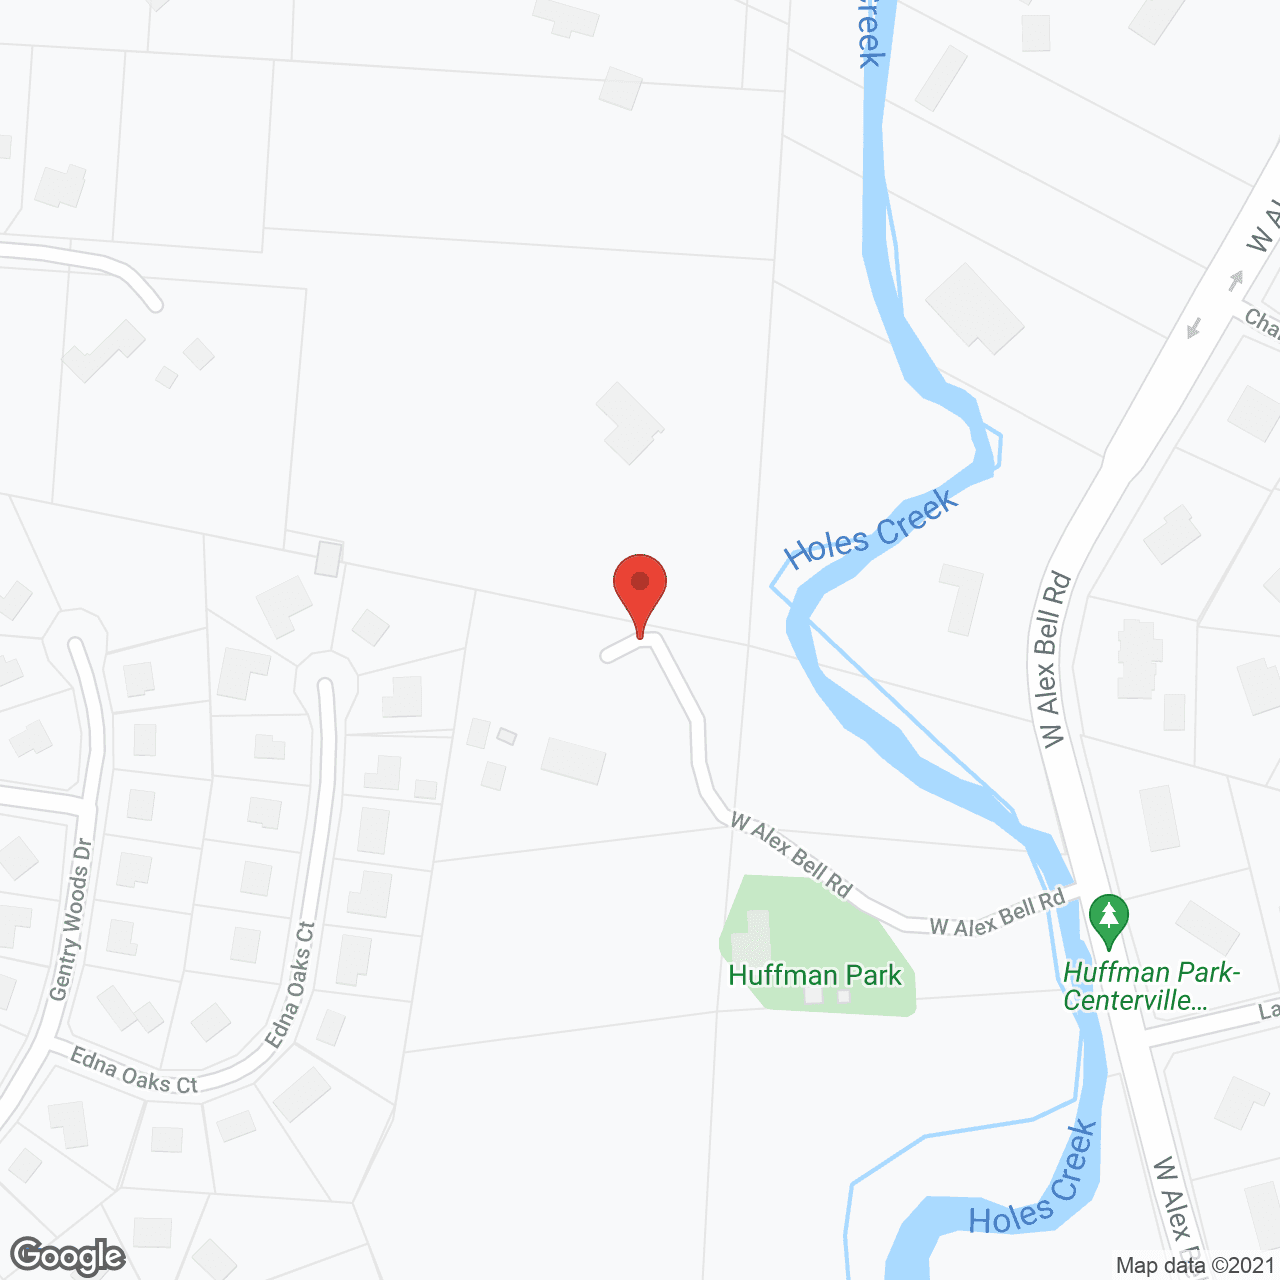 Family Tree - Washington Township in google map